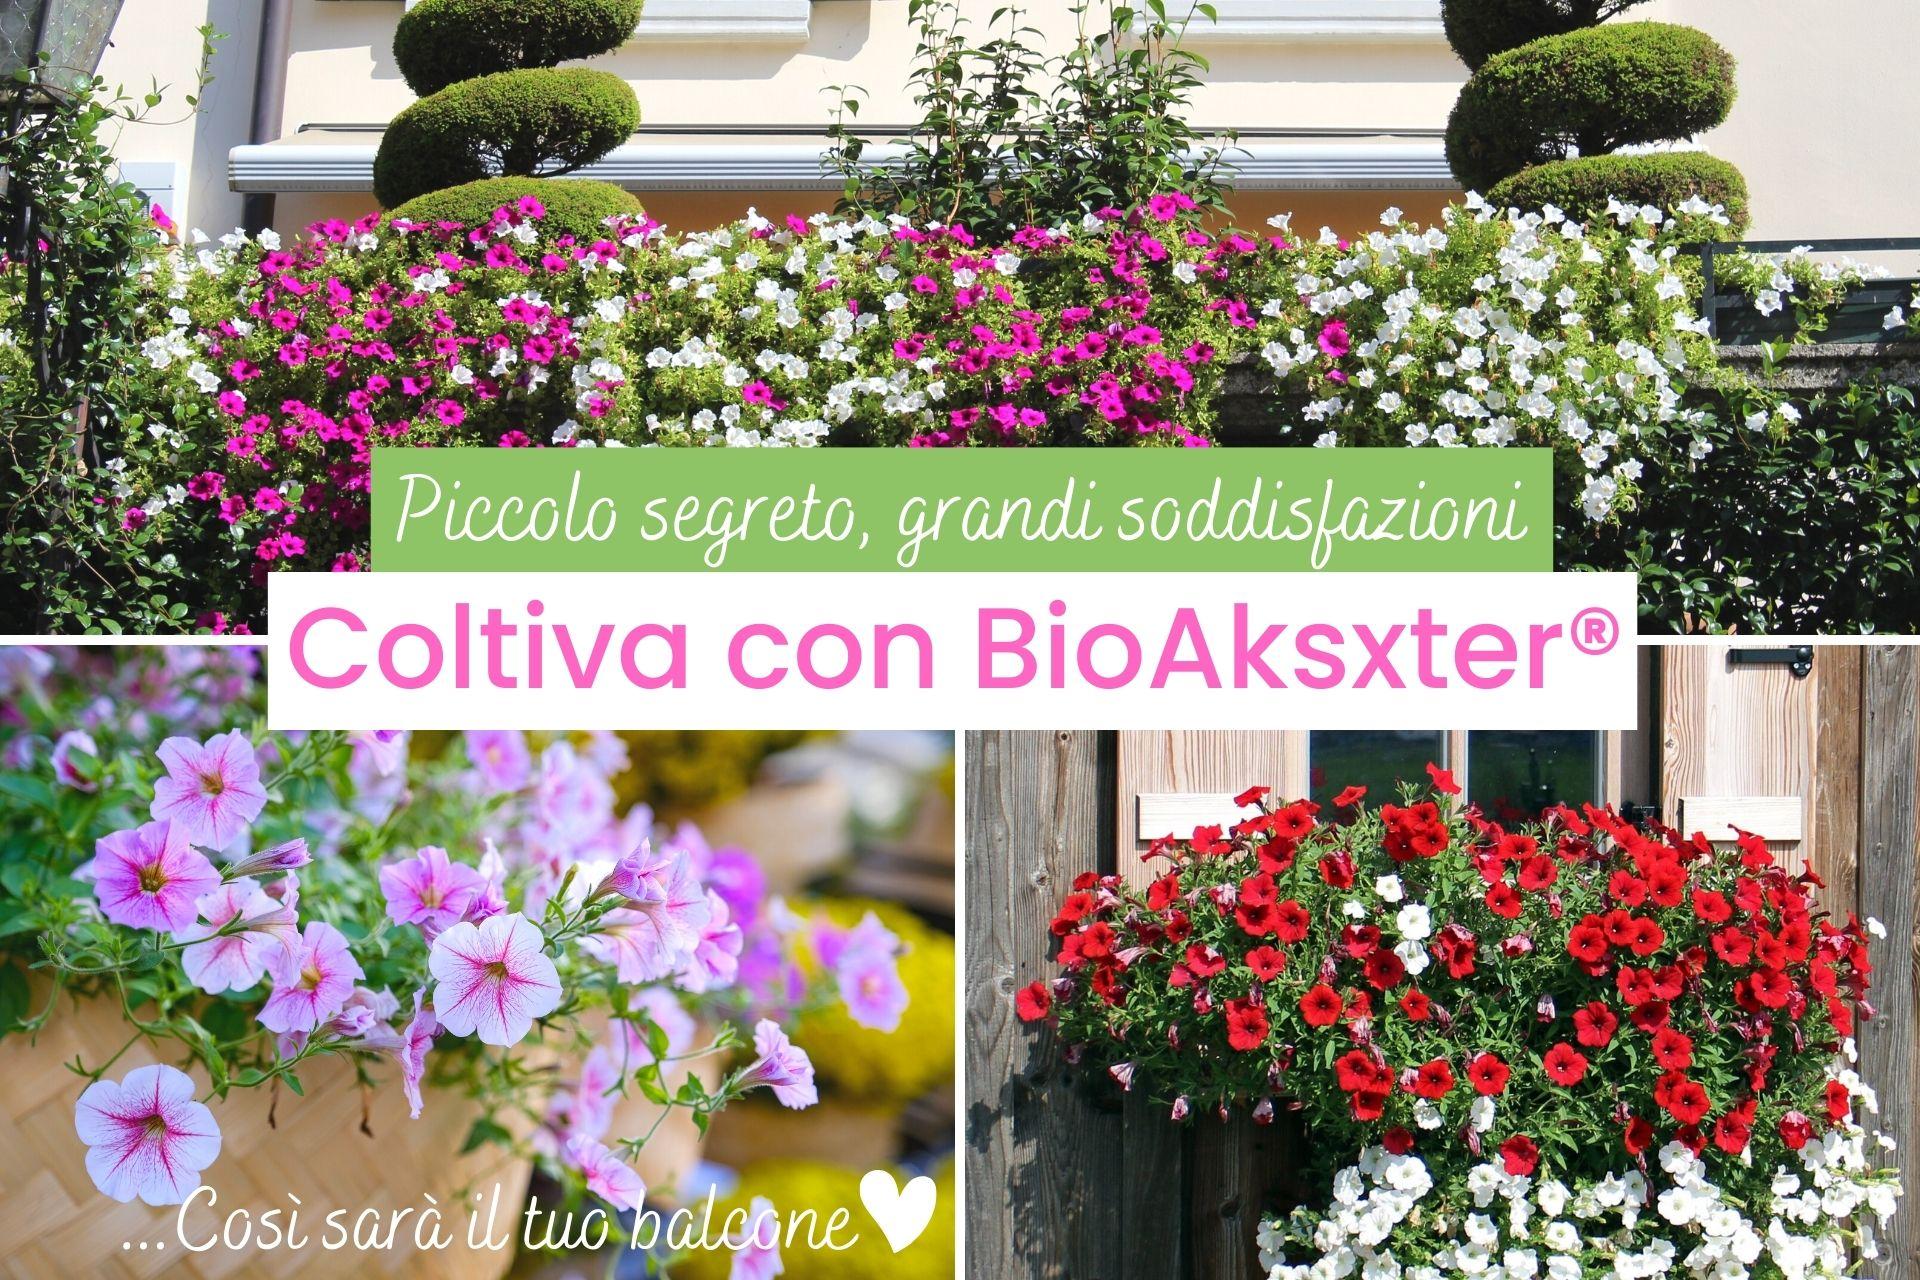 Coltivare-con-BioAksxter-coltivare-soddisfazioni.jpg